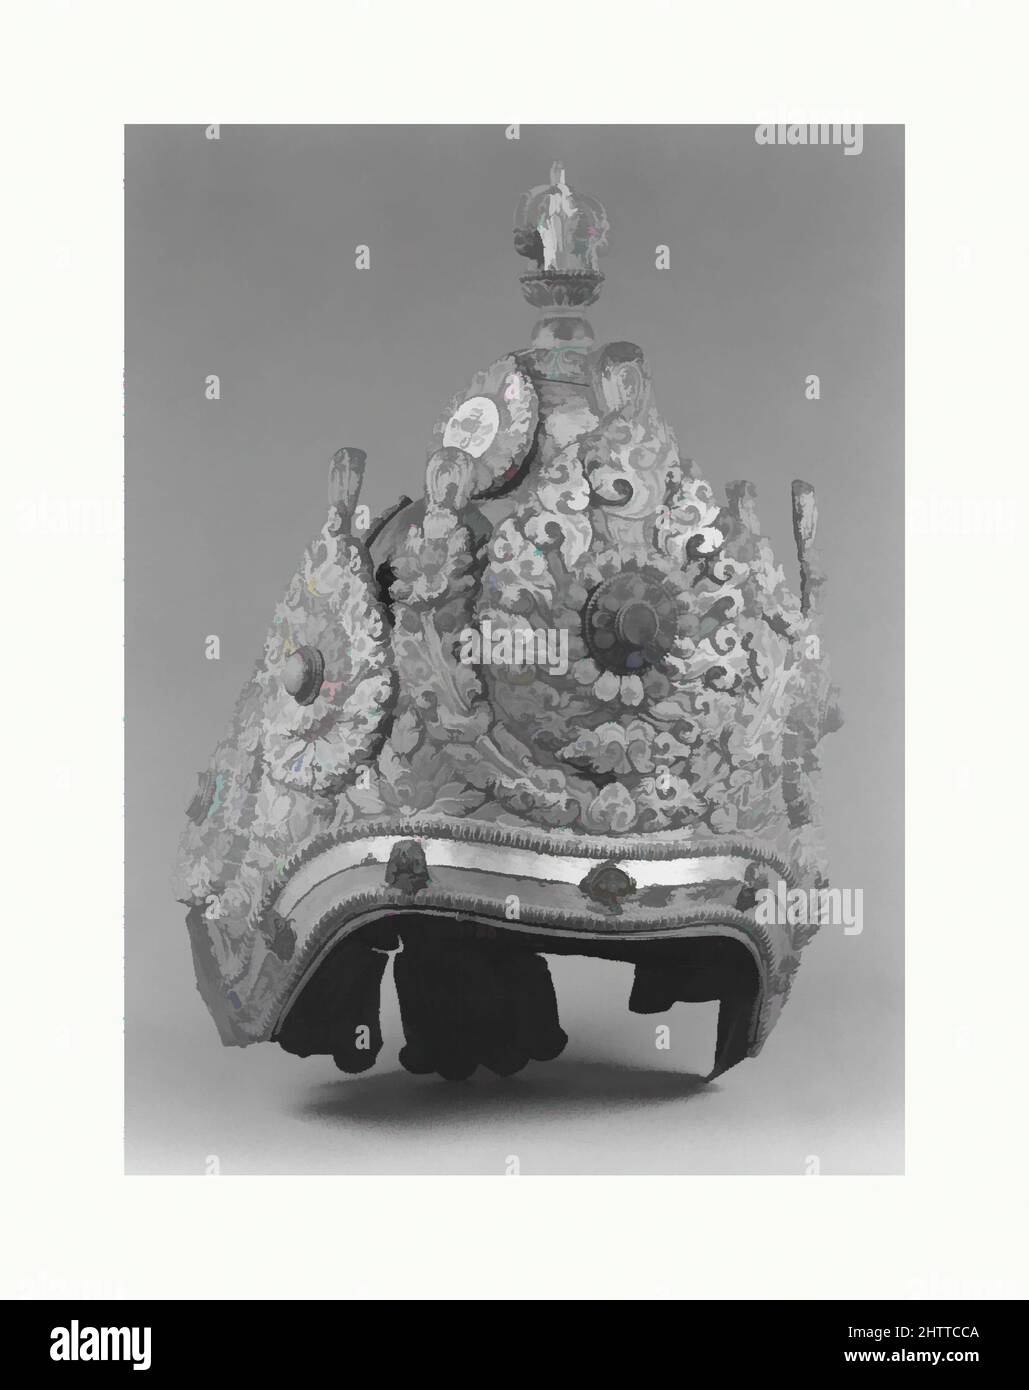 Kunst inspiriert von Ritual Crown, datiert 1717, Nepal (Kathmandu Valley), gilt Kupferlegierung, mit Halbedelsteinen inlaid, H. 12 Zoll (30,5 cm); B: 7 1/2 Zoll (19,1 cm); D. 6 3/4 Zoll (17,1 cm), Metallarbeiten, aufwendige Kronen wie dieses Beispiel wurden vom erblichen Vajracarya-Buddhismus getragen, klassische Werke, die von Artotop mit einem Schuss Moderne modernisiert wurden. Formen, Farbe und Wert, auffällige visuelle Wirkung auf Kunst. Emotionen durch Freiheit von Kunstwerken auf zeitgemäße Weise. Eine zeitlose Botschaft, die eine wild kreative neue Richtung verfolgt. Künstler, die sich dem digitalen Medium zuwenden und die Artotop NFT erschaffen Stockfoto